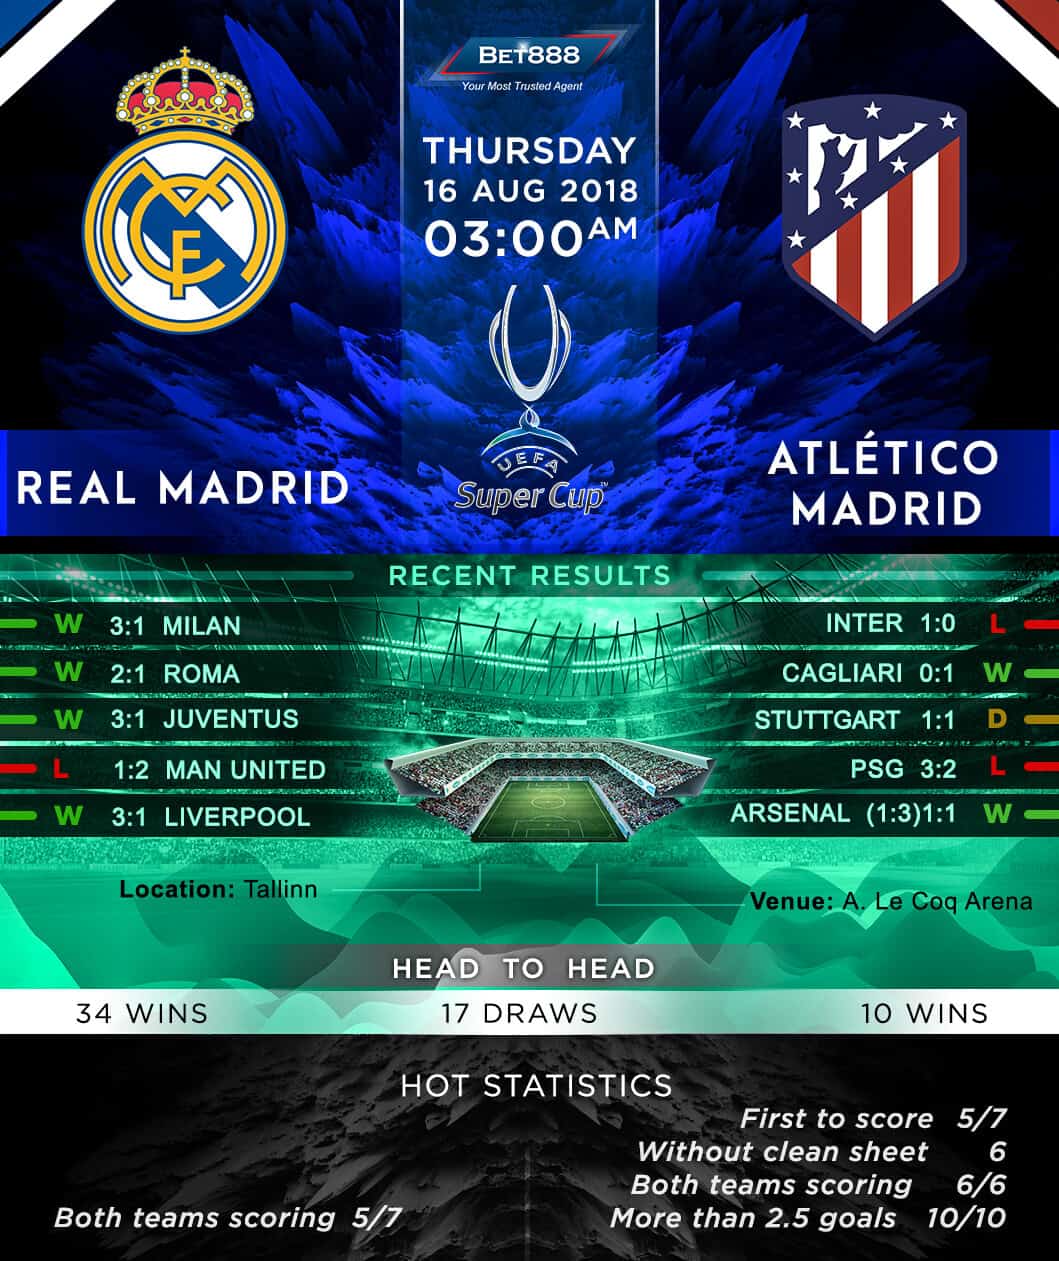 Real Madrid vs Atletico Madrid 16/08/18